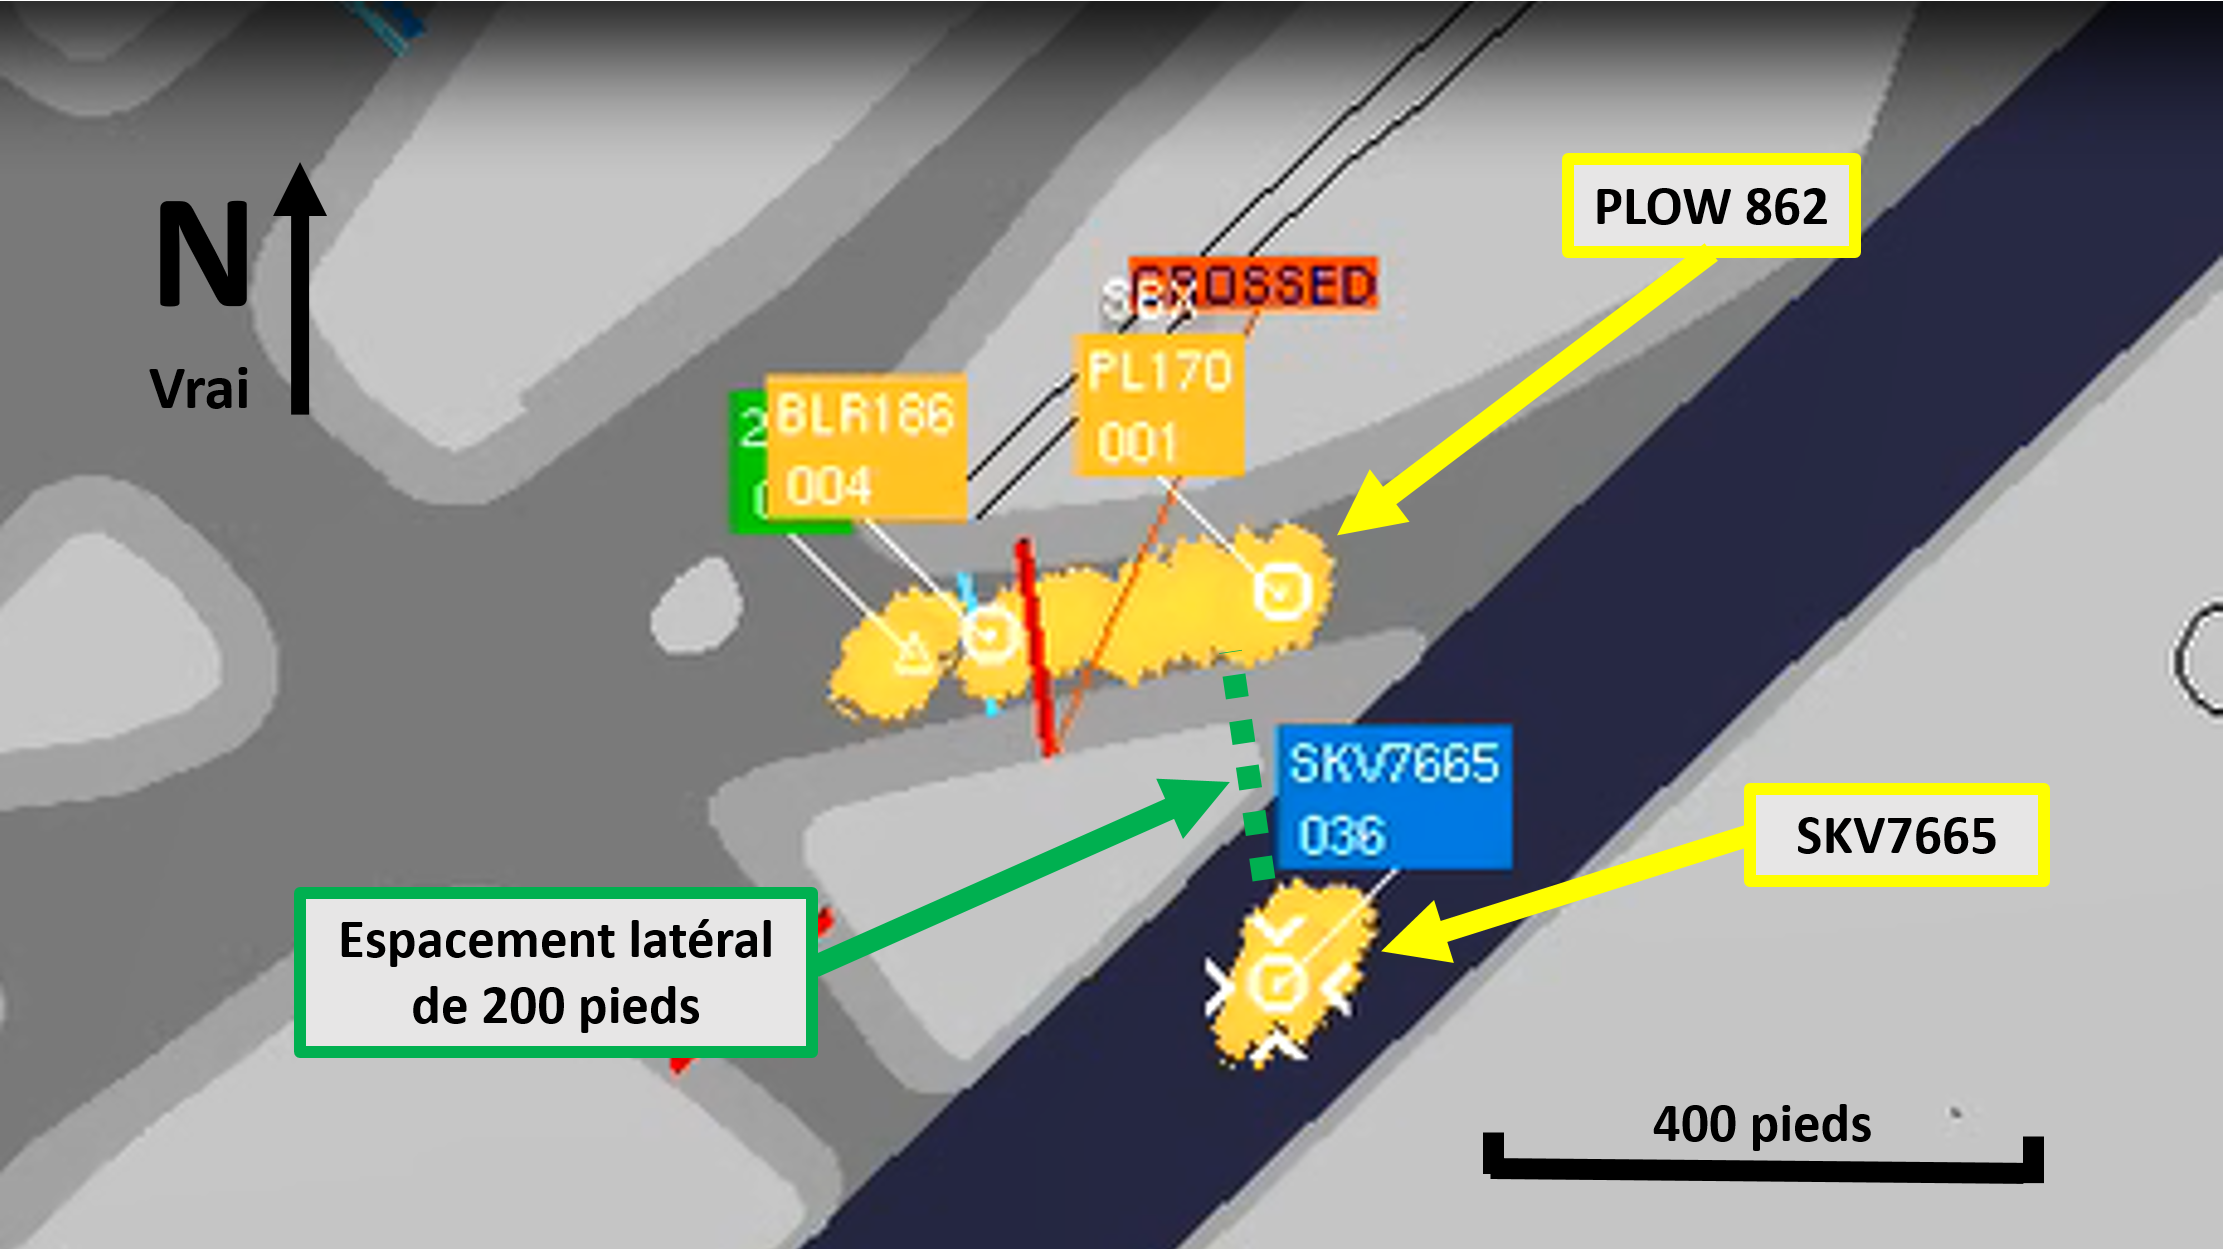 Espacement latéral entre le vol SKV7665 et PLOW 862 sur l’écran du radar sol (Source : NAV CANADA, avec annotations du BST)